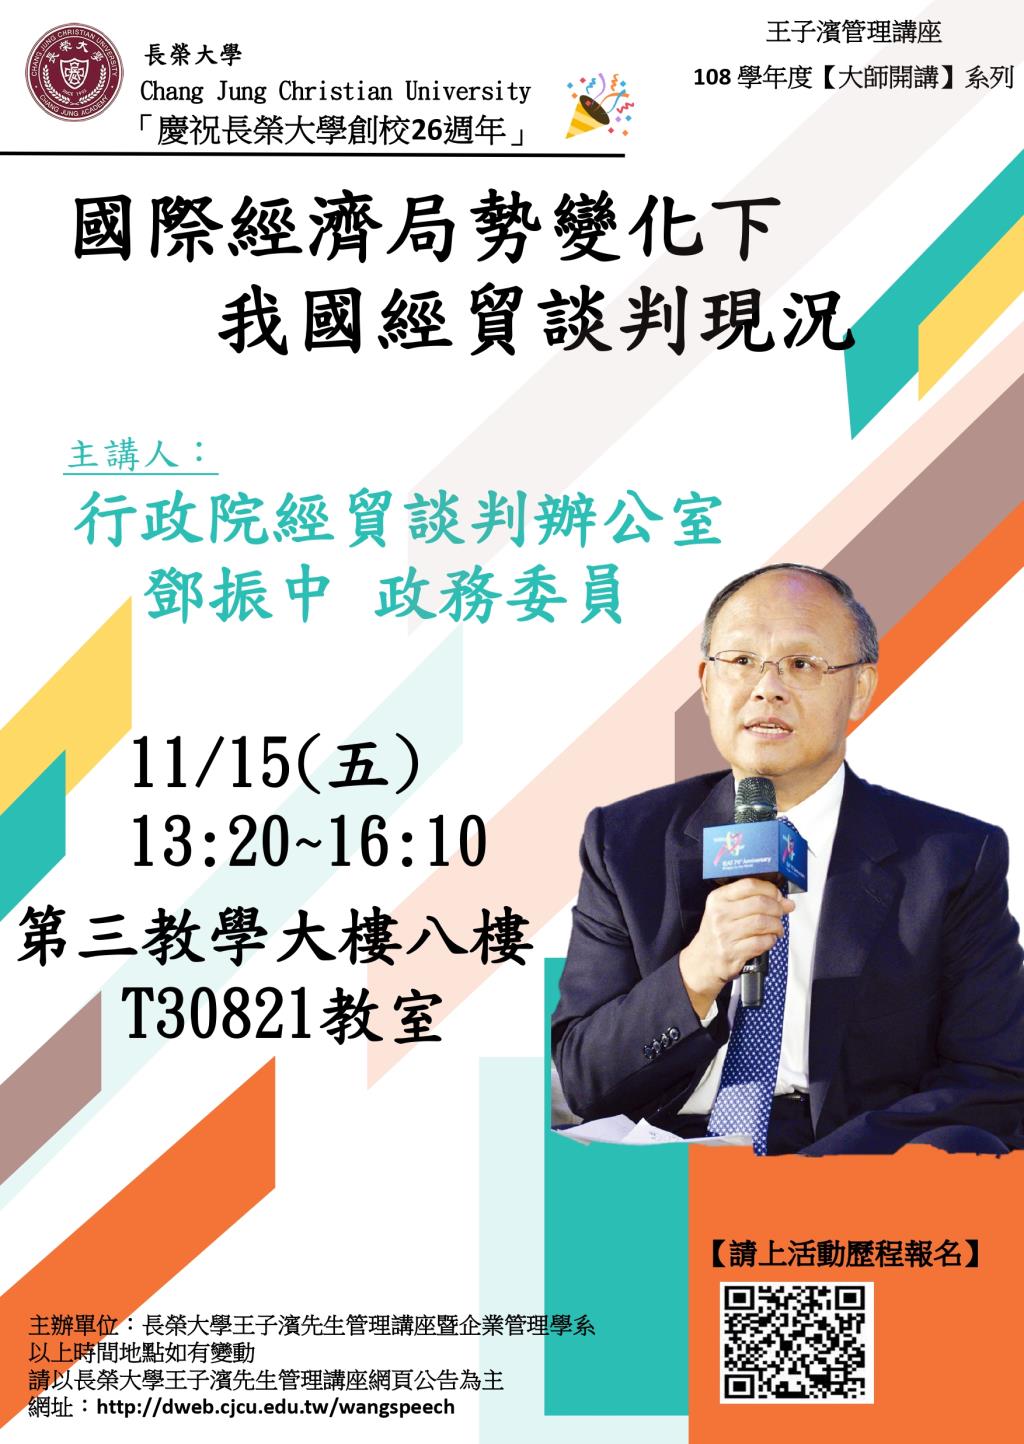 敬邀參加本週五下午(11/15)王子濱先生管理講---行政院經貿談判辦公室 鄧振中政務委員